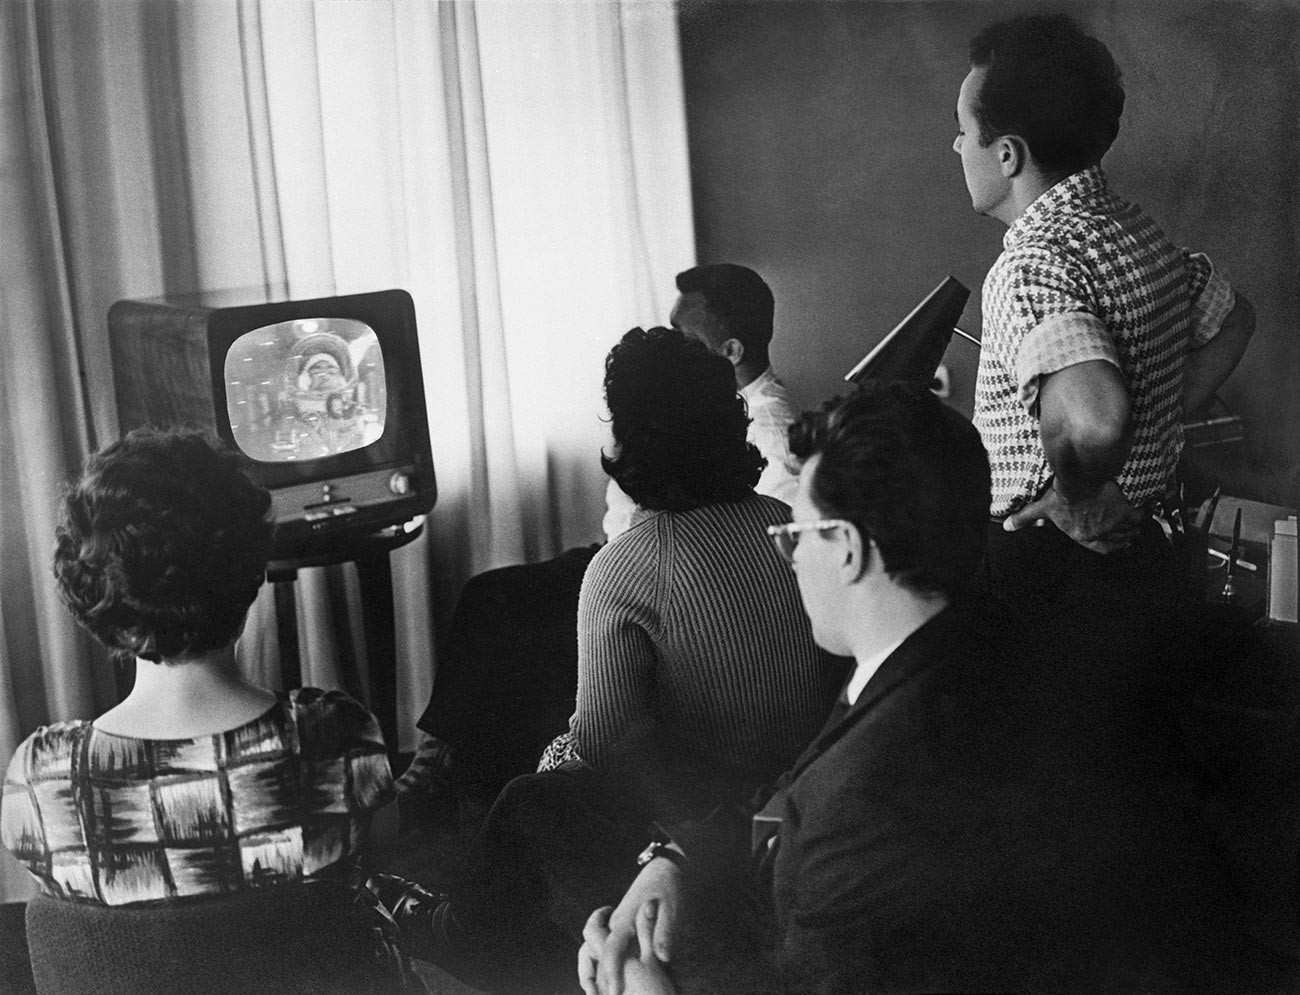 Os raros comerciais de TV foram concebidos como um aspecto visual da propaganda estatal
